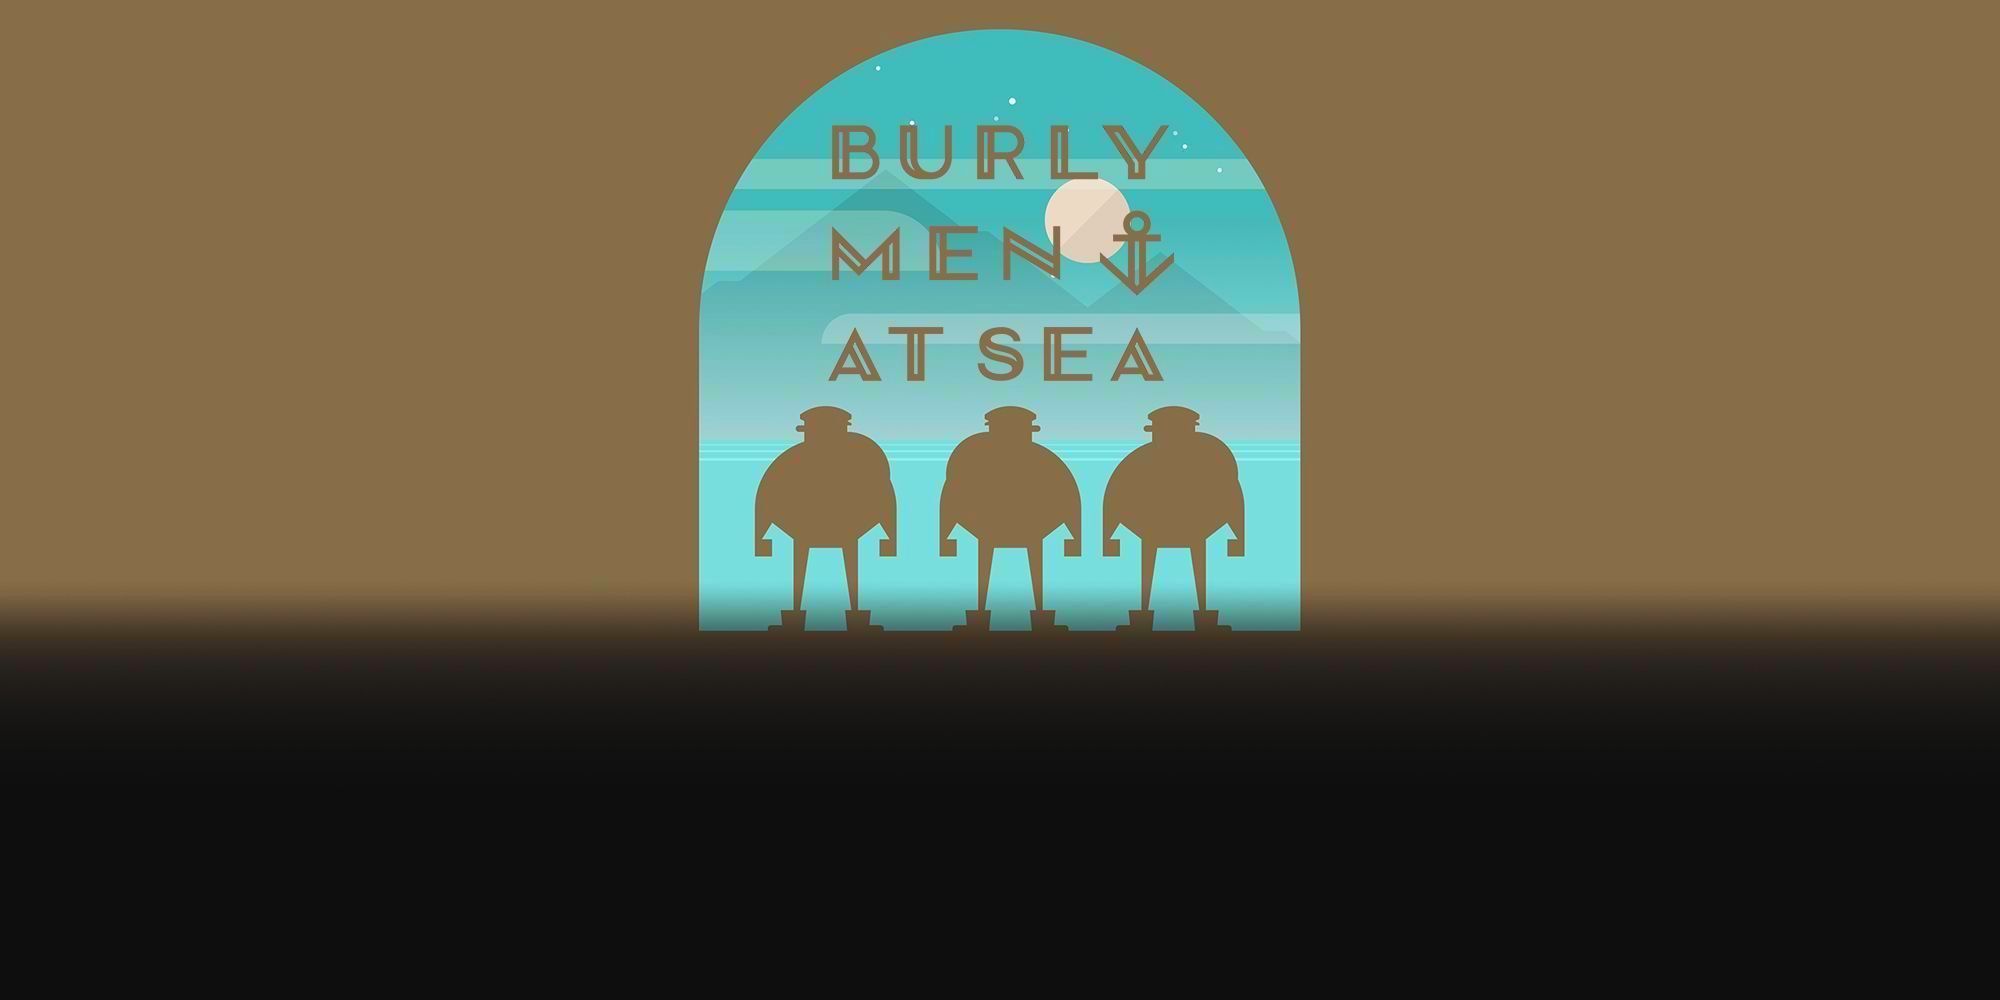 three burly men at sea